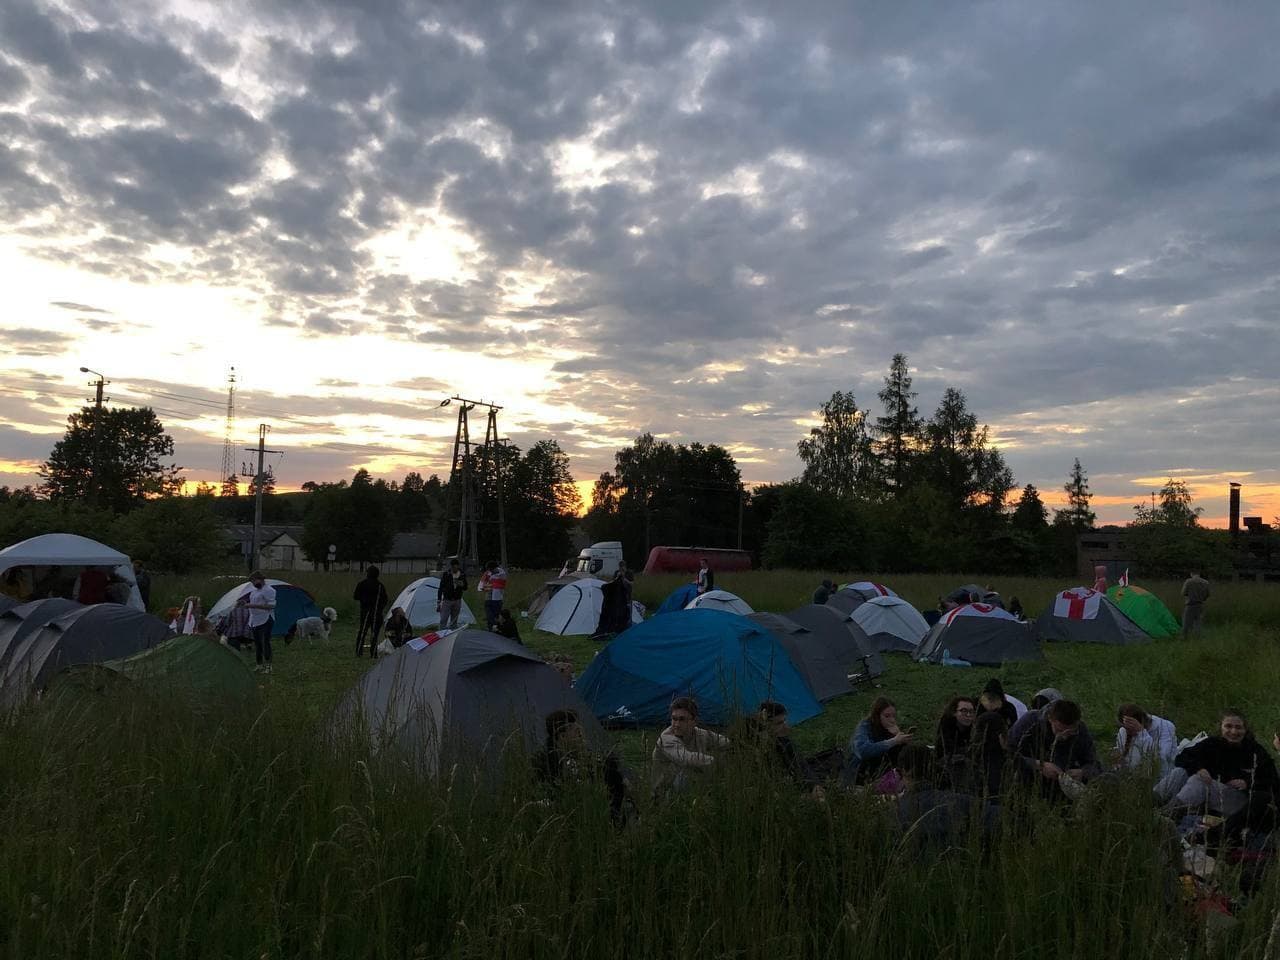 “Хватит озабоченности”: белорусы поставили палатки на границе и требуют санкций